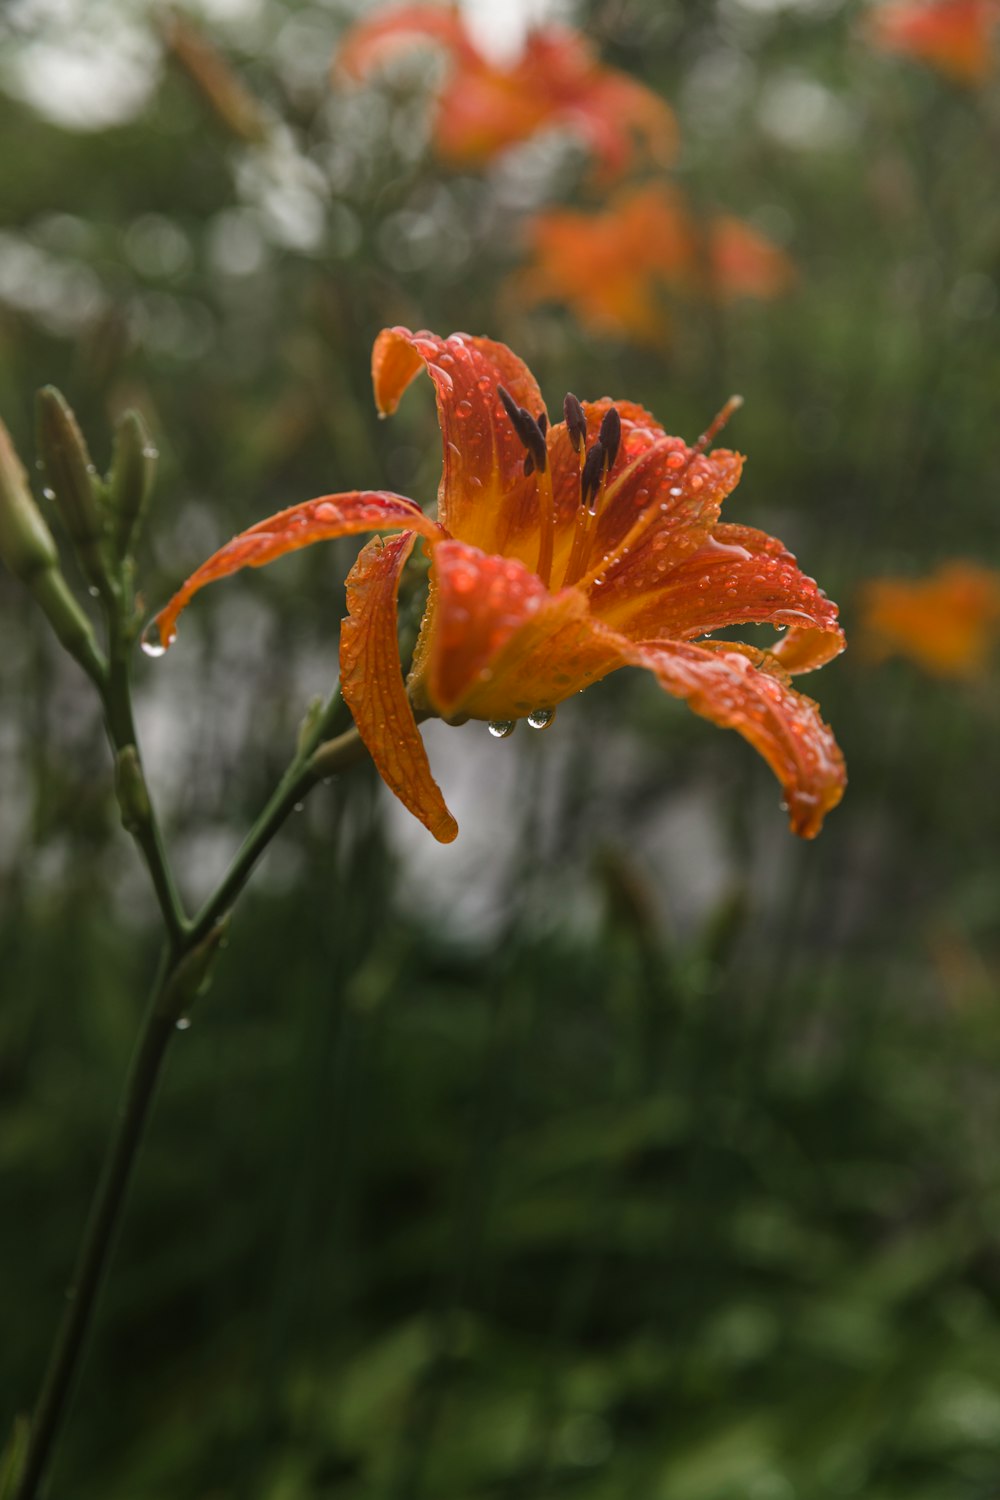 ティルトシフトレンズのオレンジ色の花